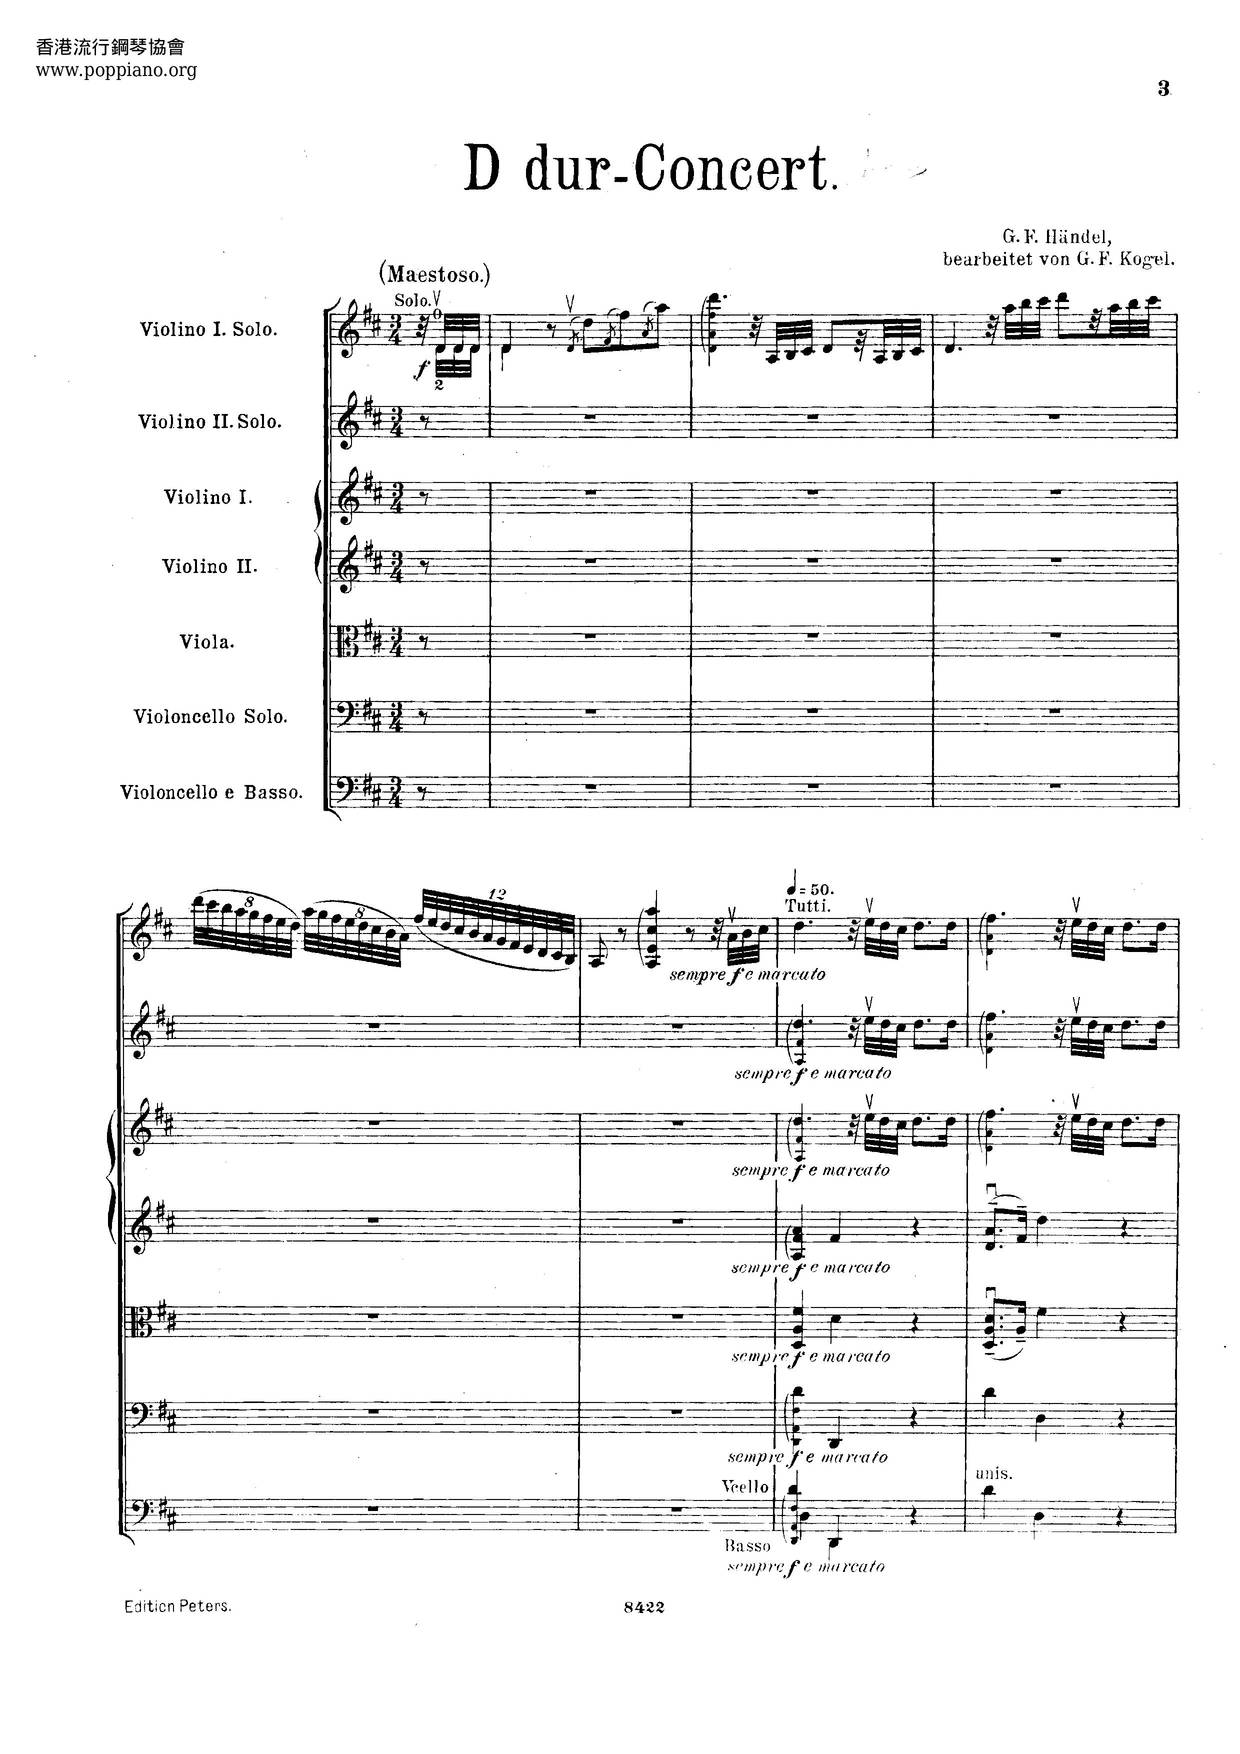 Concerto Grosso In D Major, HWV 323 Score